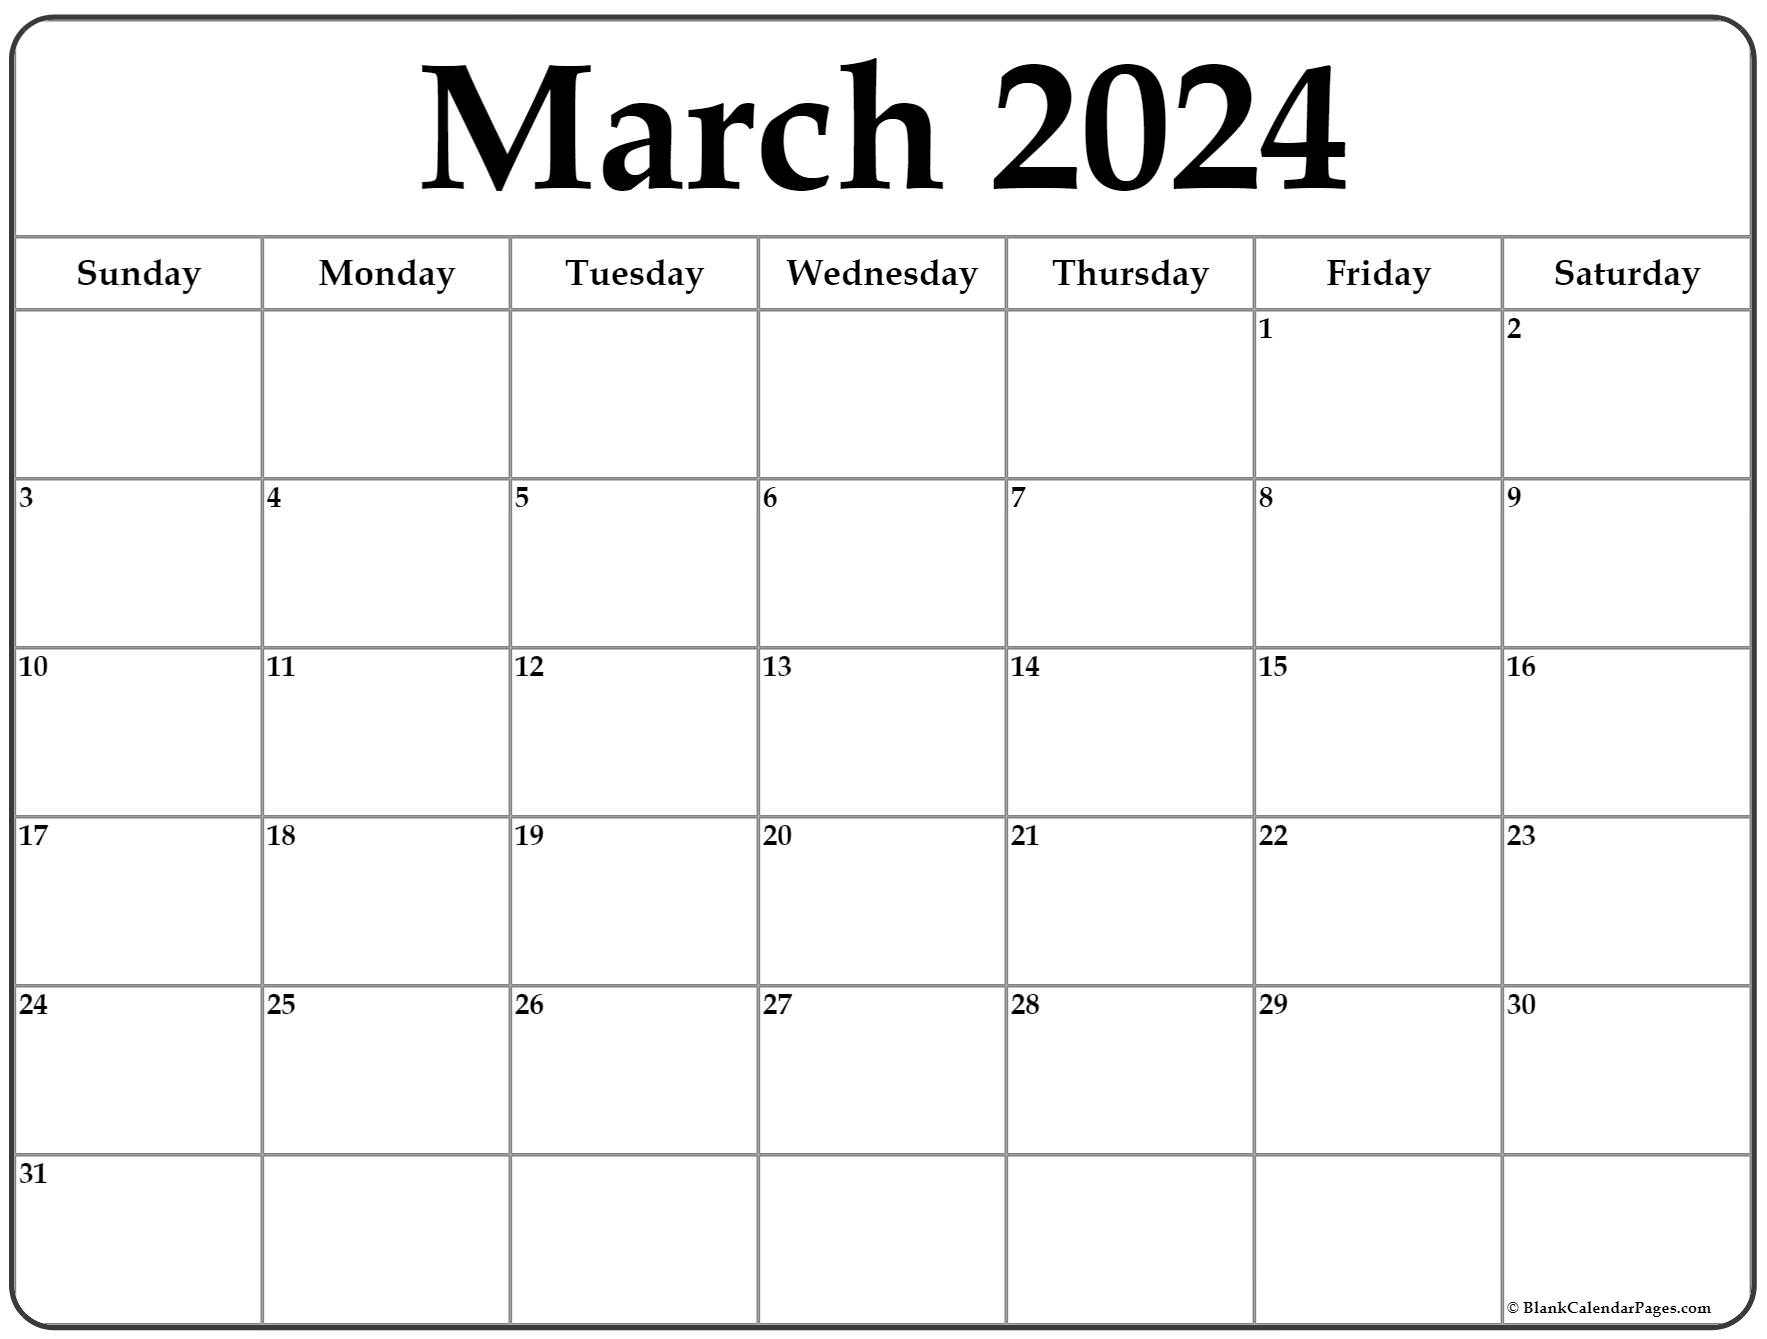 Editable March 2022 Calendar March 2022 Calendar | Free Printable Calendar Templates